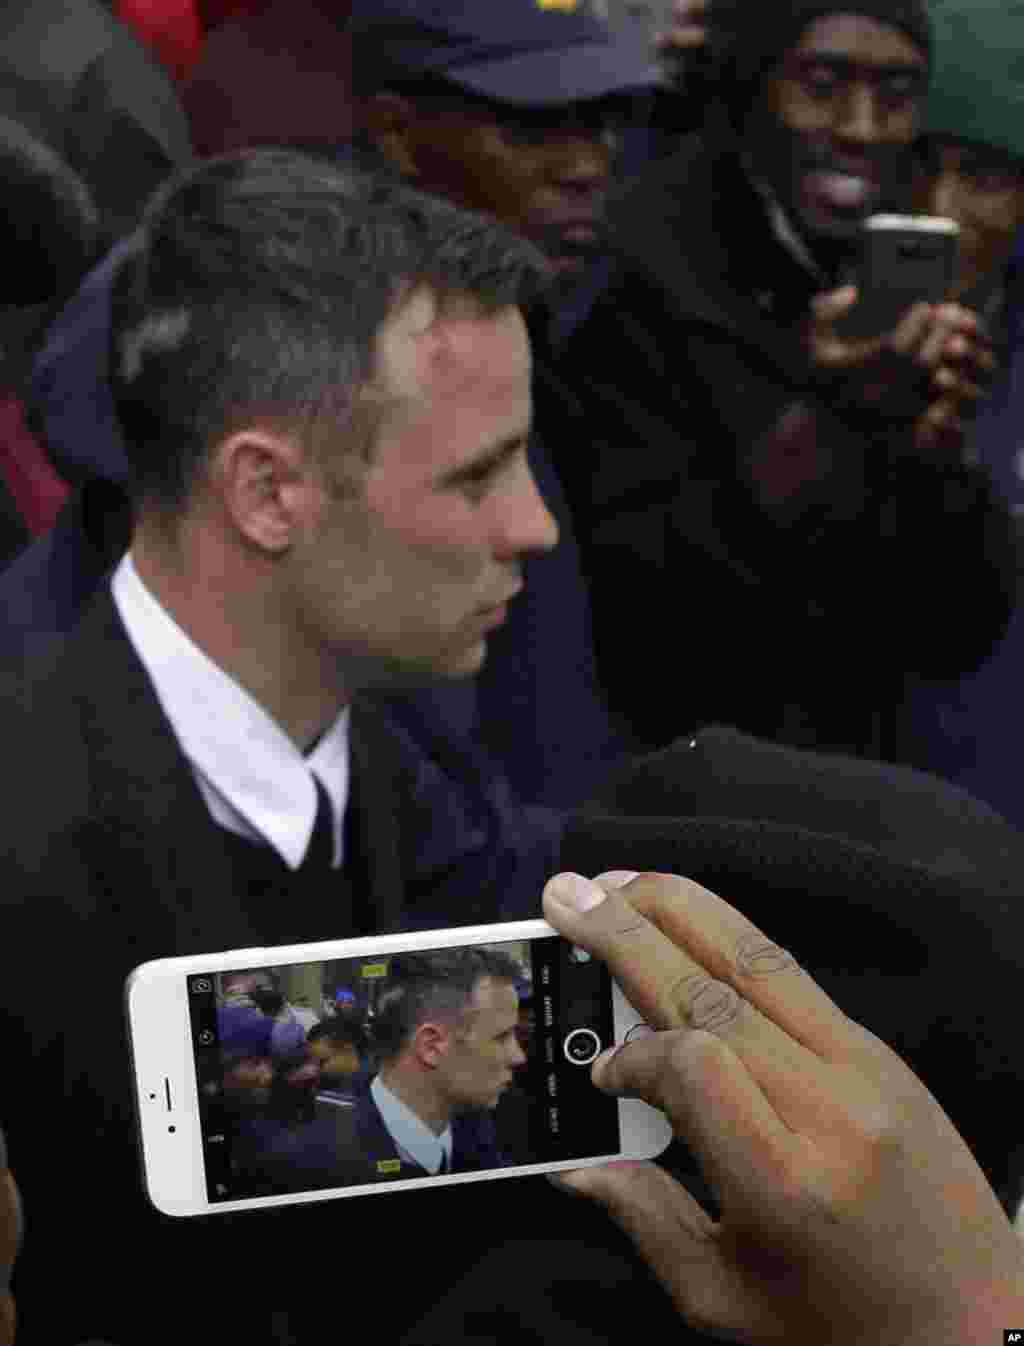 លោក Oscar Pistorius ត្រូវ​បាន​ប៉ូលិស​នាំ​ចេញ​ទៅ នៅ​ពេល​ដែល​សាធារណជន​ថត​រូប​គាត់​ជាមួយ​នឹង​ទូរស័ព្ទ​របស់​ពួកគេ​នៅ​ខាង​ក្រៅ​តុលាការ​កំពូល​នៅ​ក្នុង​ក្រុង​ប្រេតូរីយ៉ា ប្រទេស​អាហ្វ្រិក​ខាង​ត្បូង បន្ទាប់​សវនការ​របស់​លោក។ តុលាការ​ឧទ្ធរណ៍​បាន​រក​ឃើញ​ថា​ លោក Pistorius មាន​ទោស​ពី​បទ​ឃាតកកម្ម​ ទៅ​លើ​មិត្តស្រី​របស់​លោក​គឺ​នាង Reeve Steenkamp។